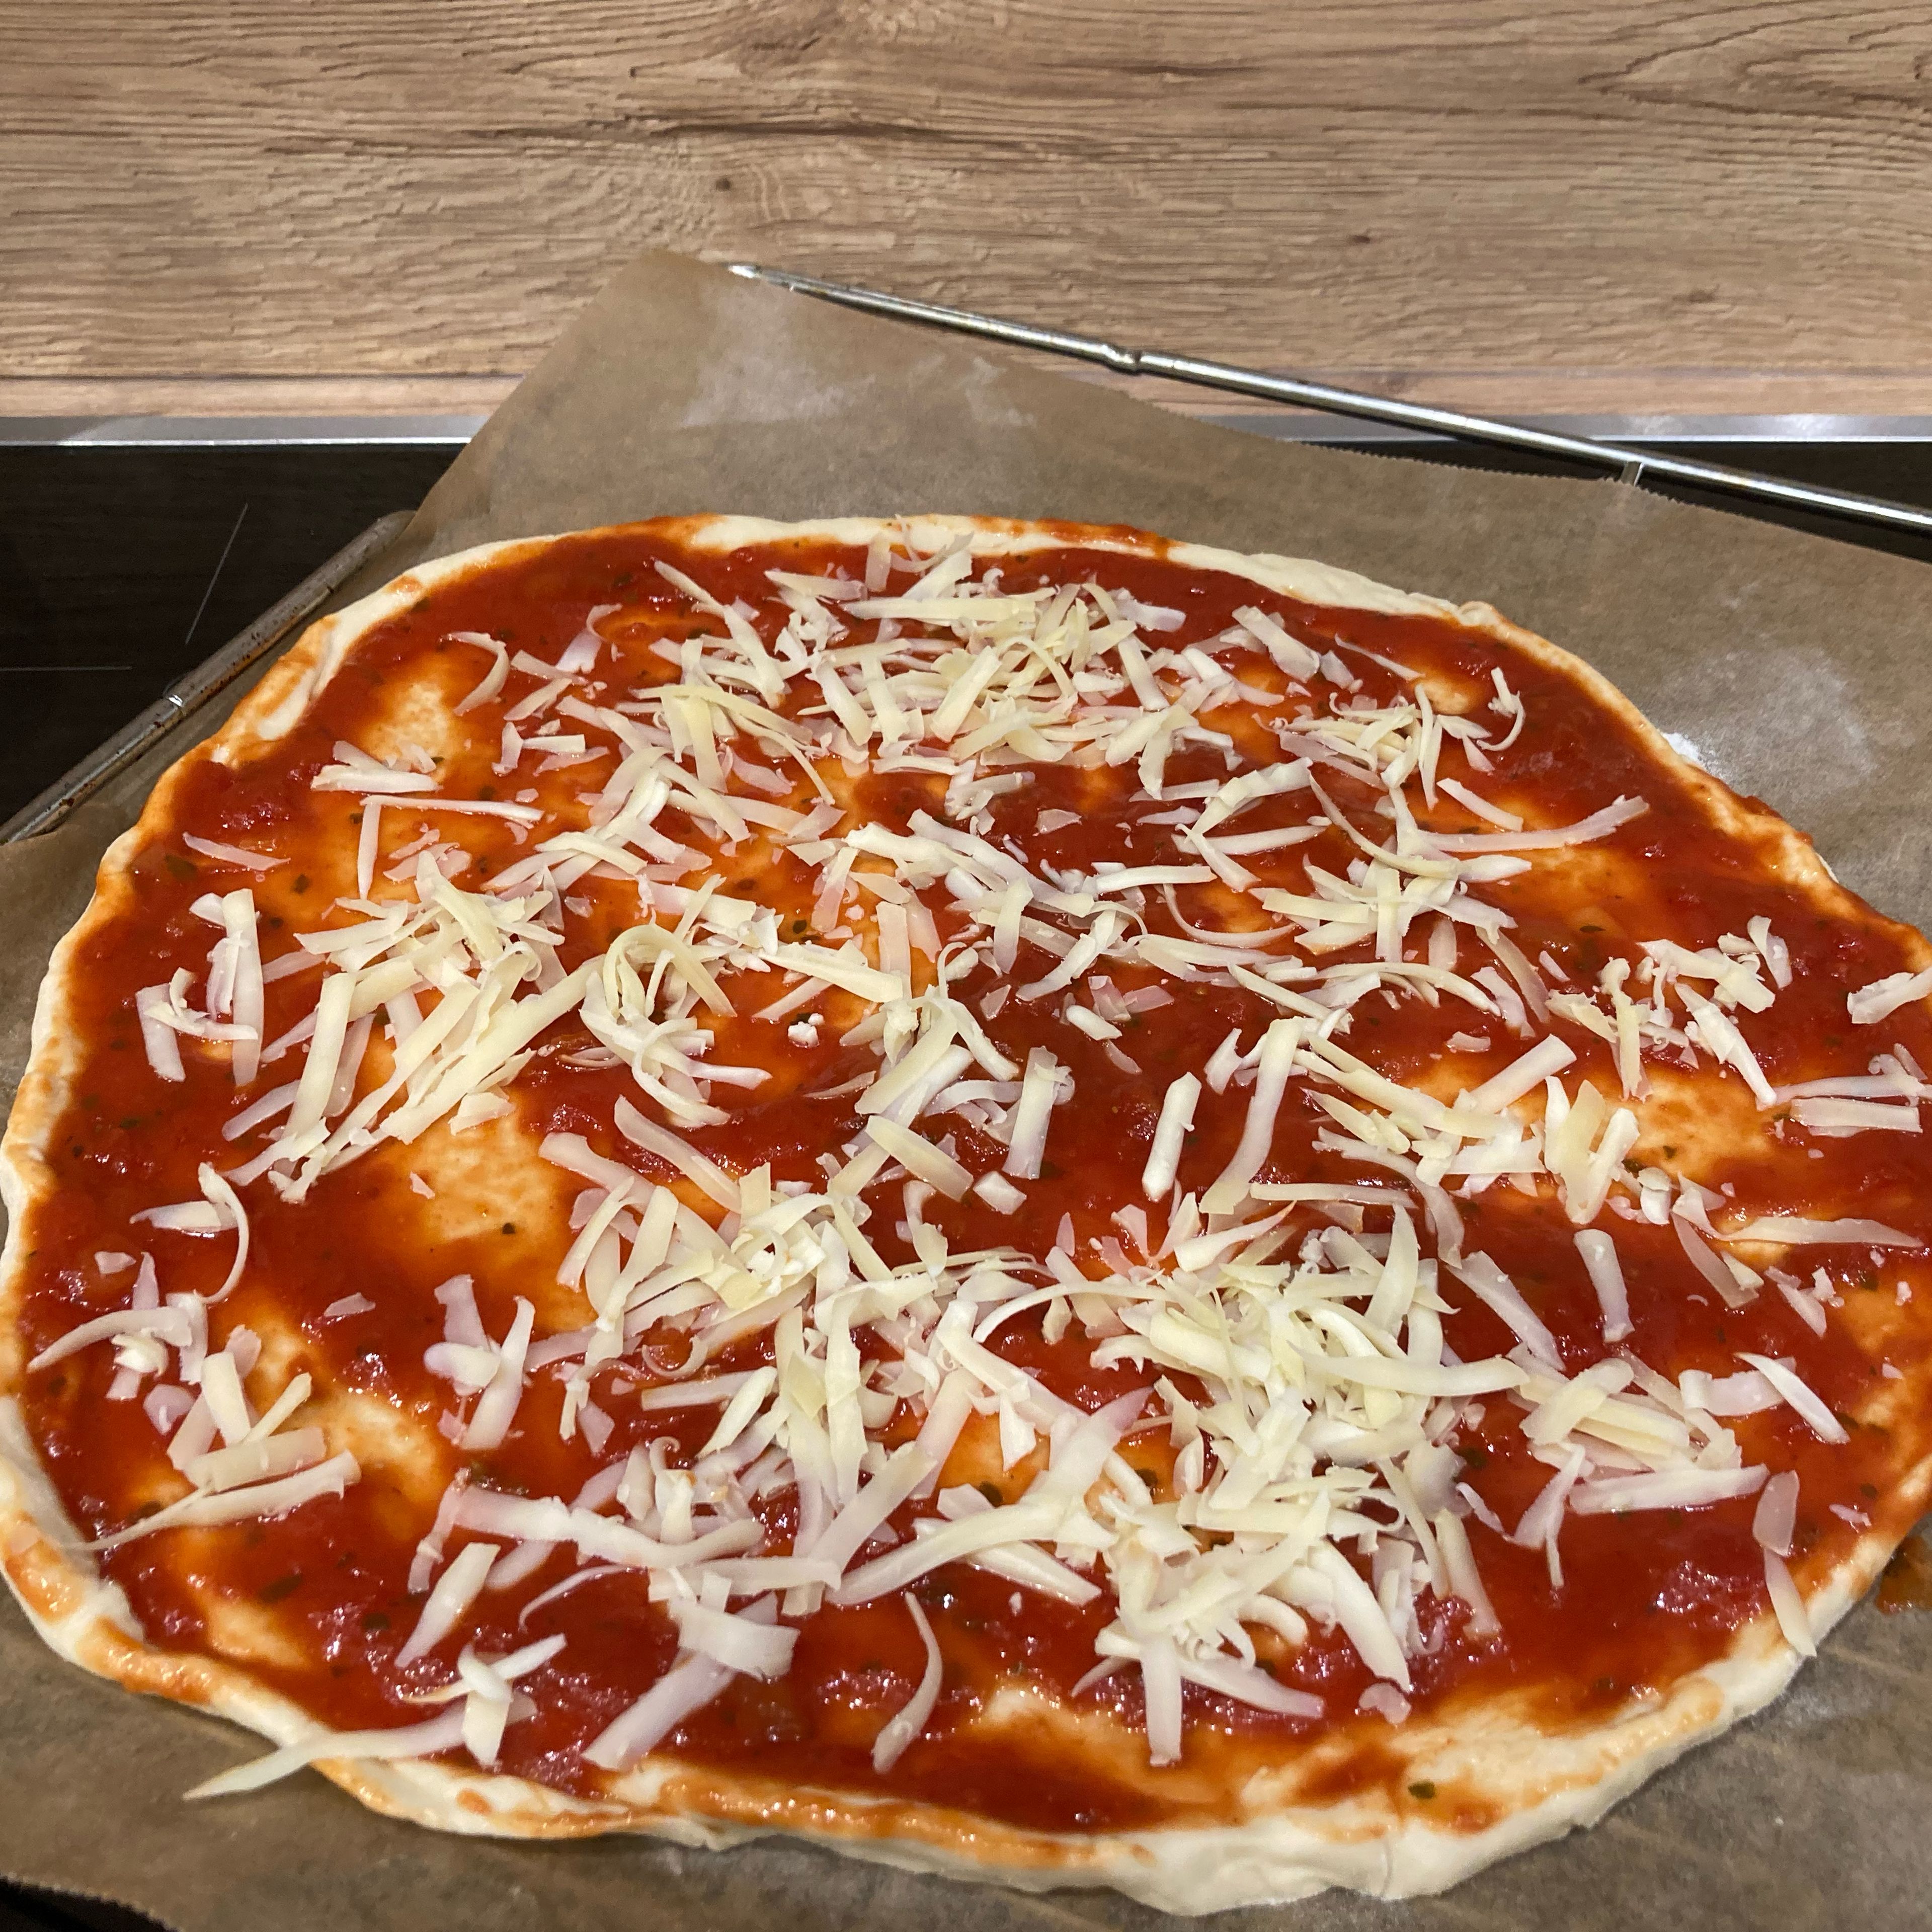 Teig teilen und auf bemehlter Arbeitsfläche rund ausrollen. Ofen auf 240 Grad O/U vorheizen. Teige auf mit Backpapier belegte Backbleche legen. Tomatensoße und geriebenen Käse darauf verteilen. Jetzt die beiden Pizzateige mit scharfer Salami belegen. Mozzarella und Cocktailtomaten halbieren und ebenfalls darauf verteilen. Pesto kleksweise verteilen. Pizza im vorgeheizten Ofen etwa 15 Minuten backen. Guten Appetit 😋